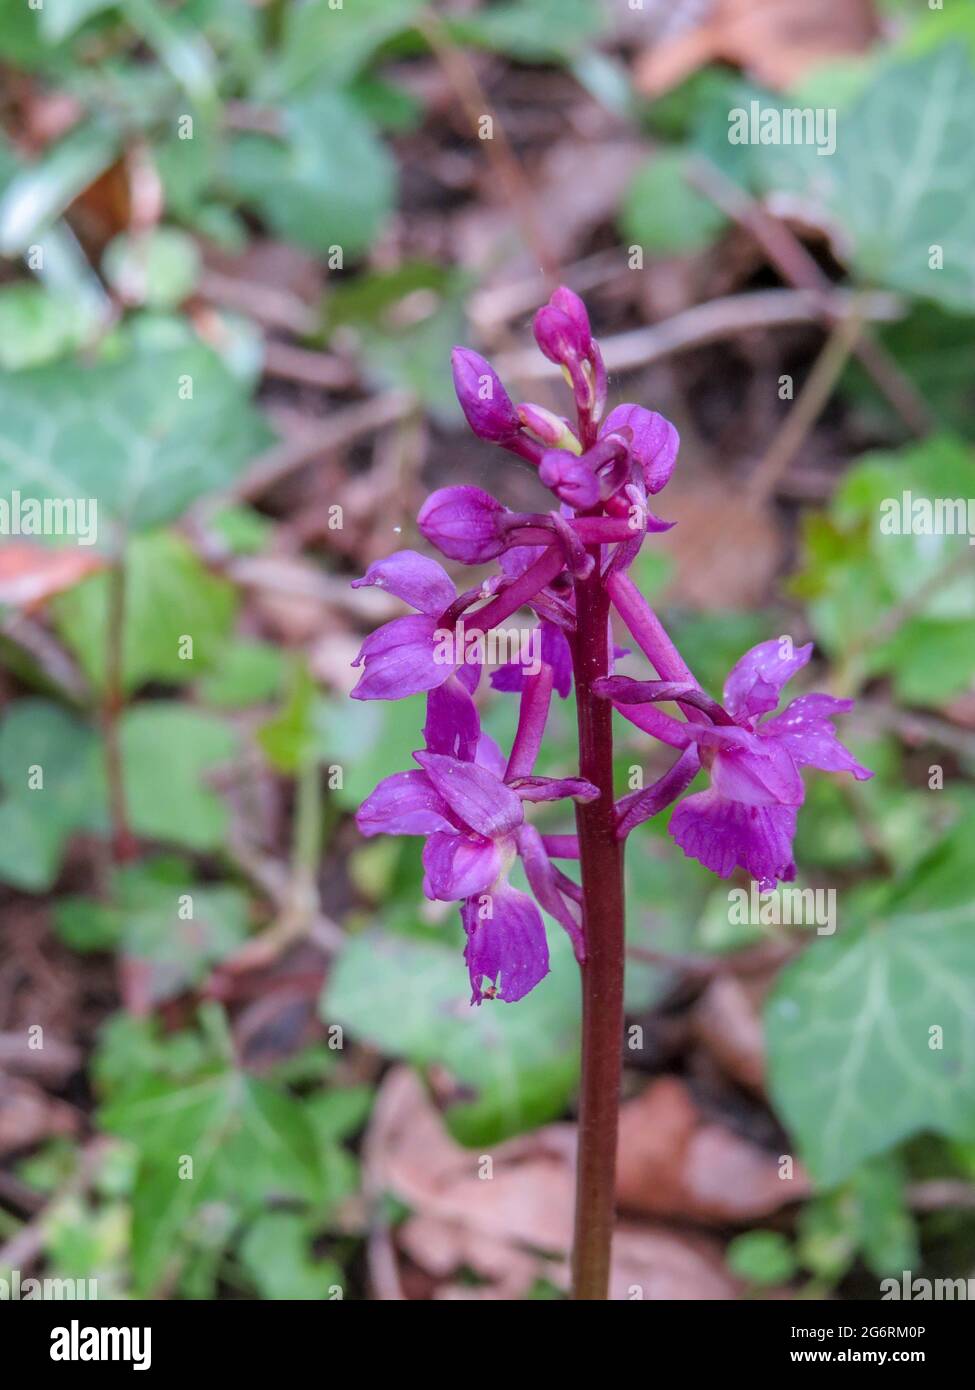 la prima orchidea viola è una delle prime orchidee a comparire in primavera Foto Stock